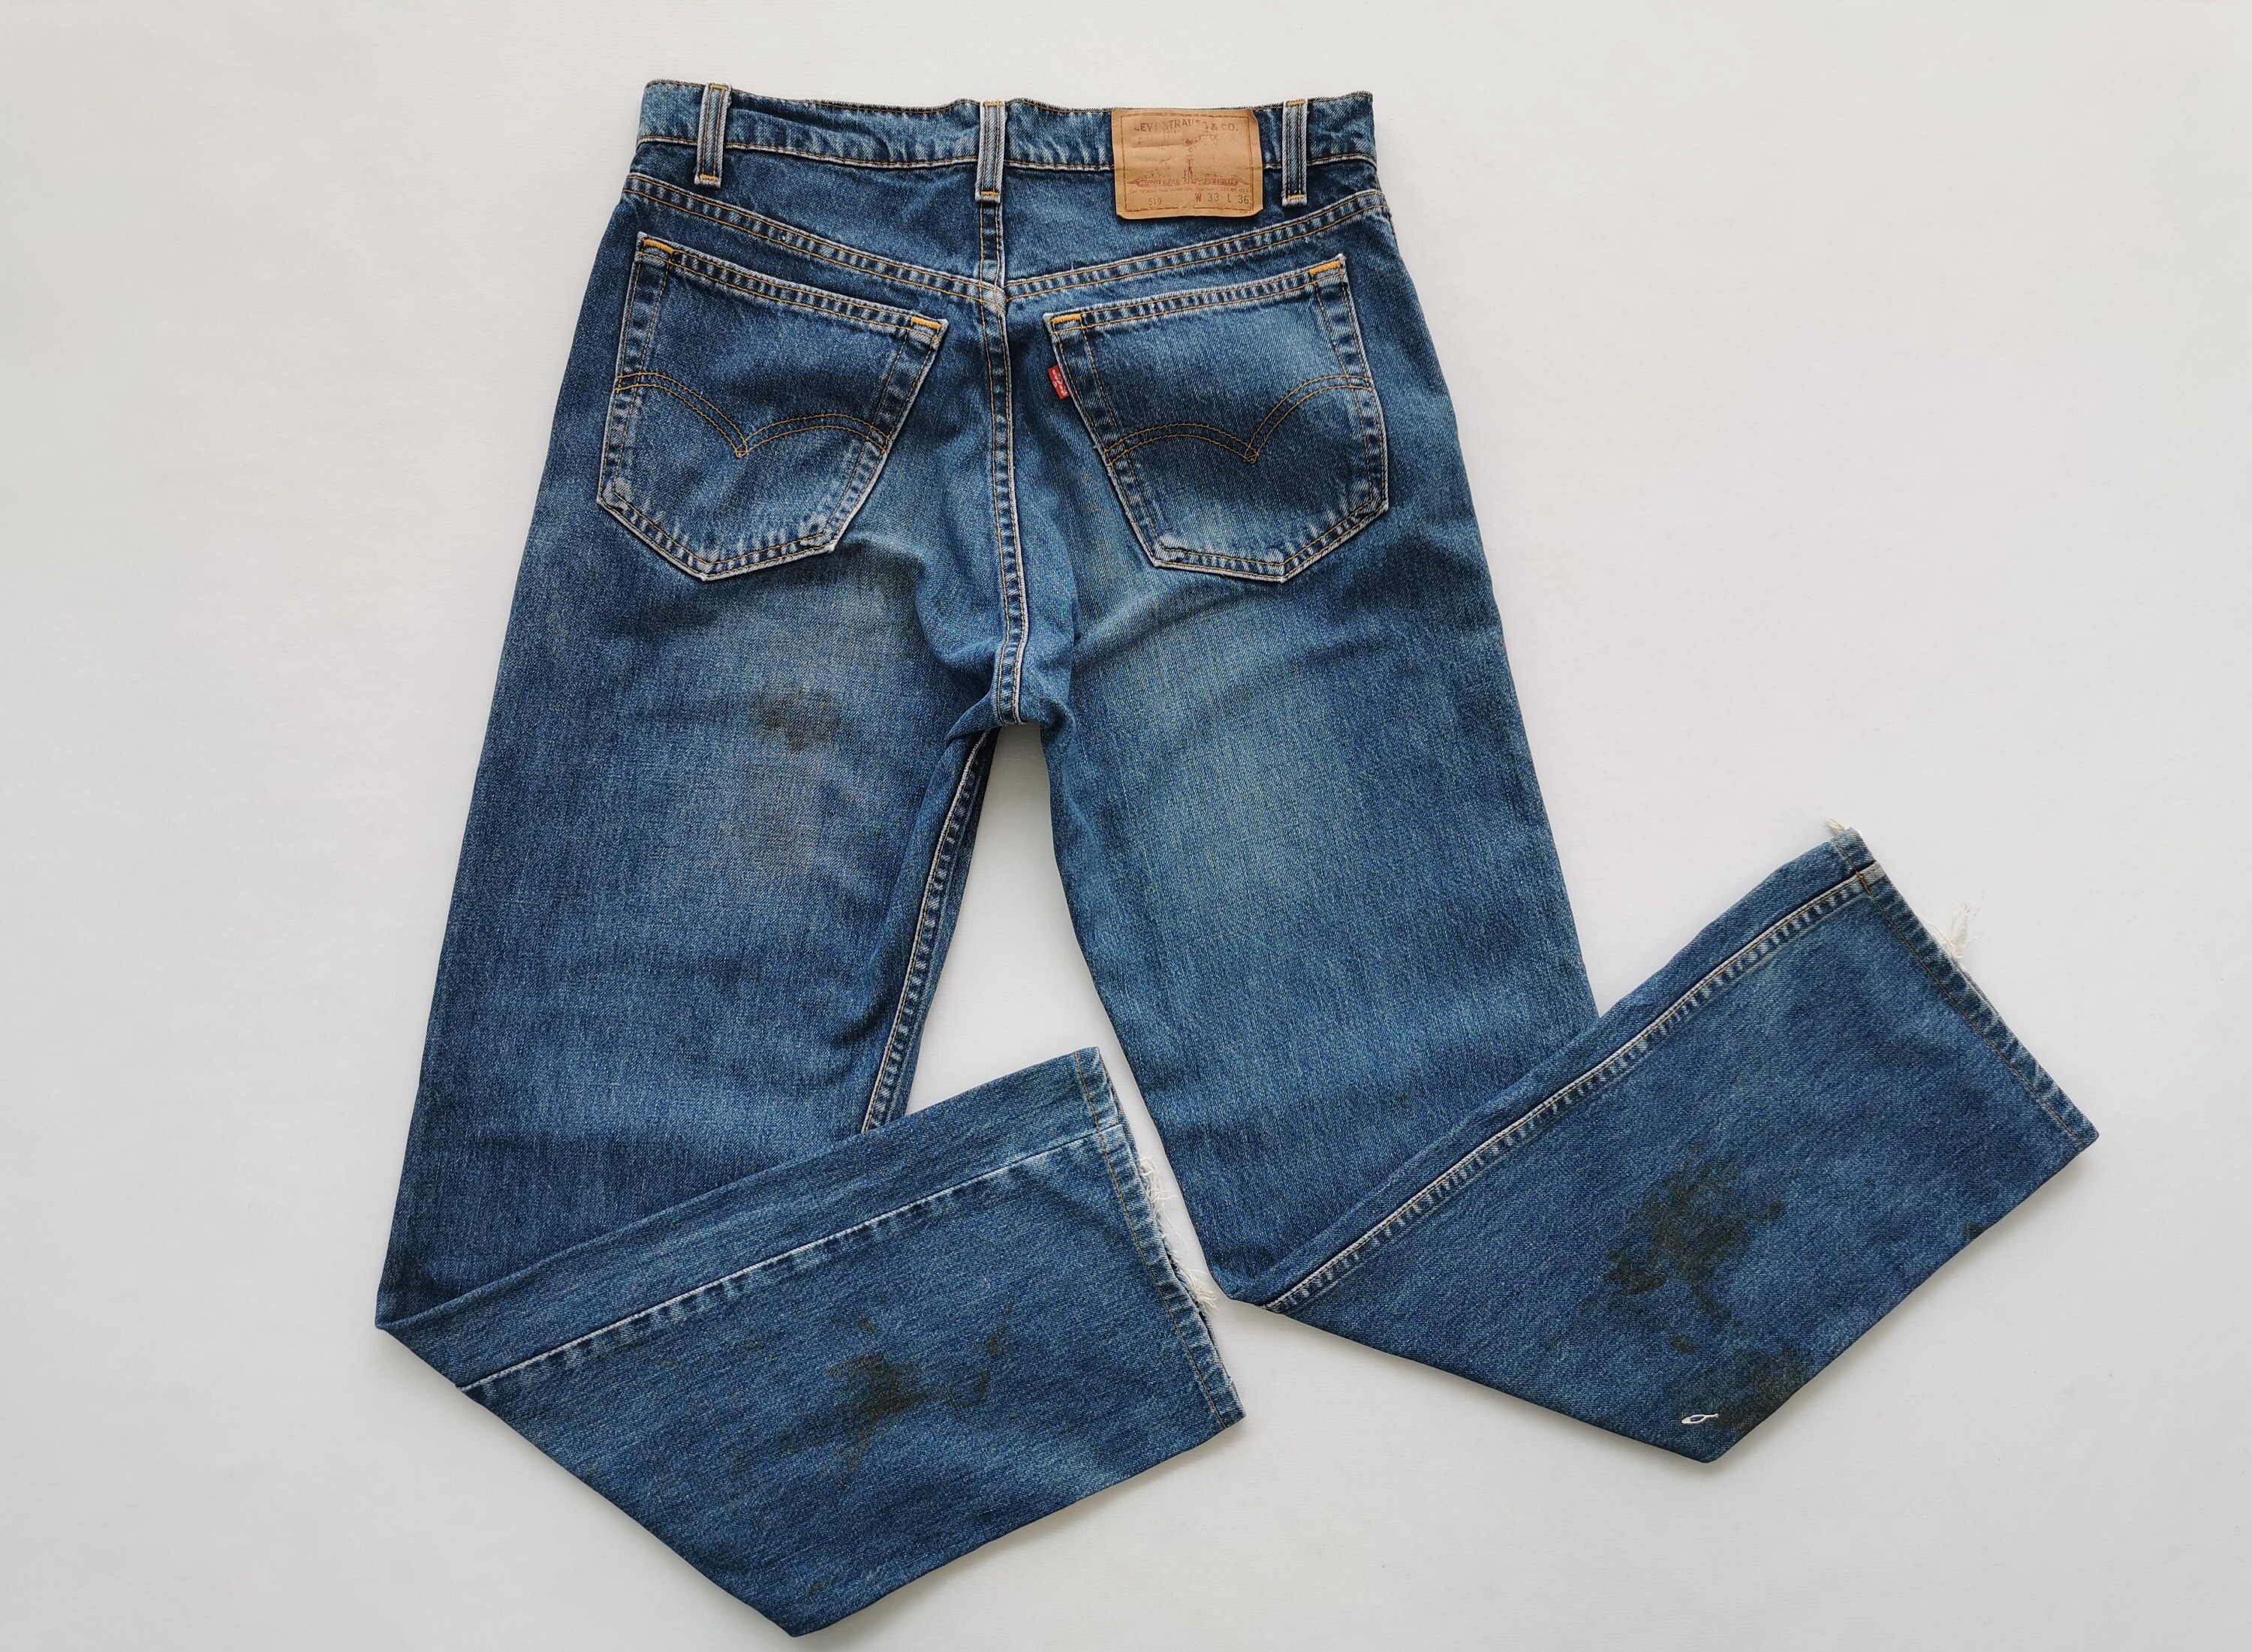 Levis 519 Jeans Distressed Vintage 90s 33 Levis 519 - Etsy